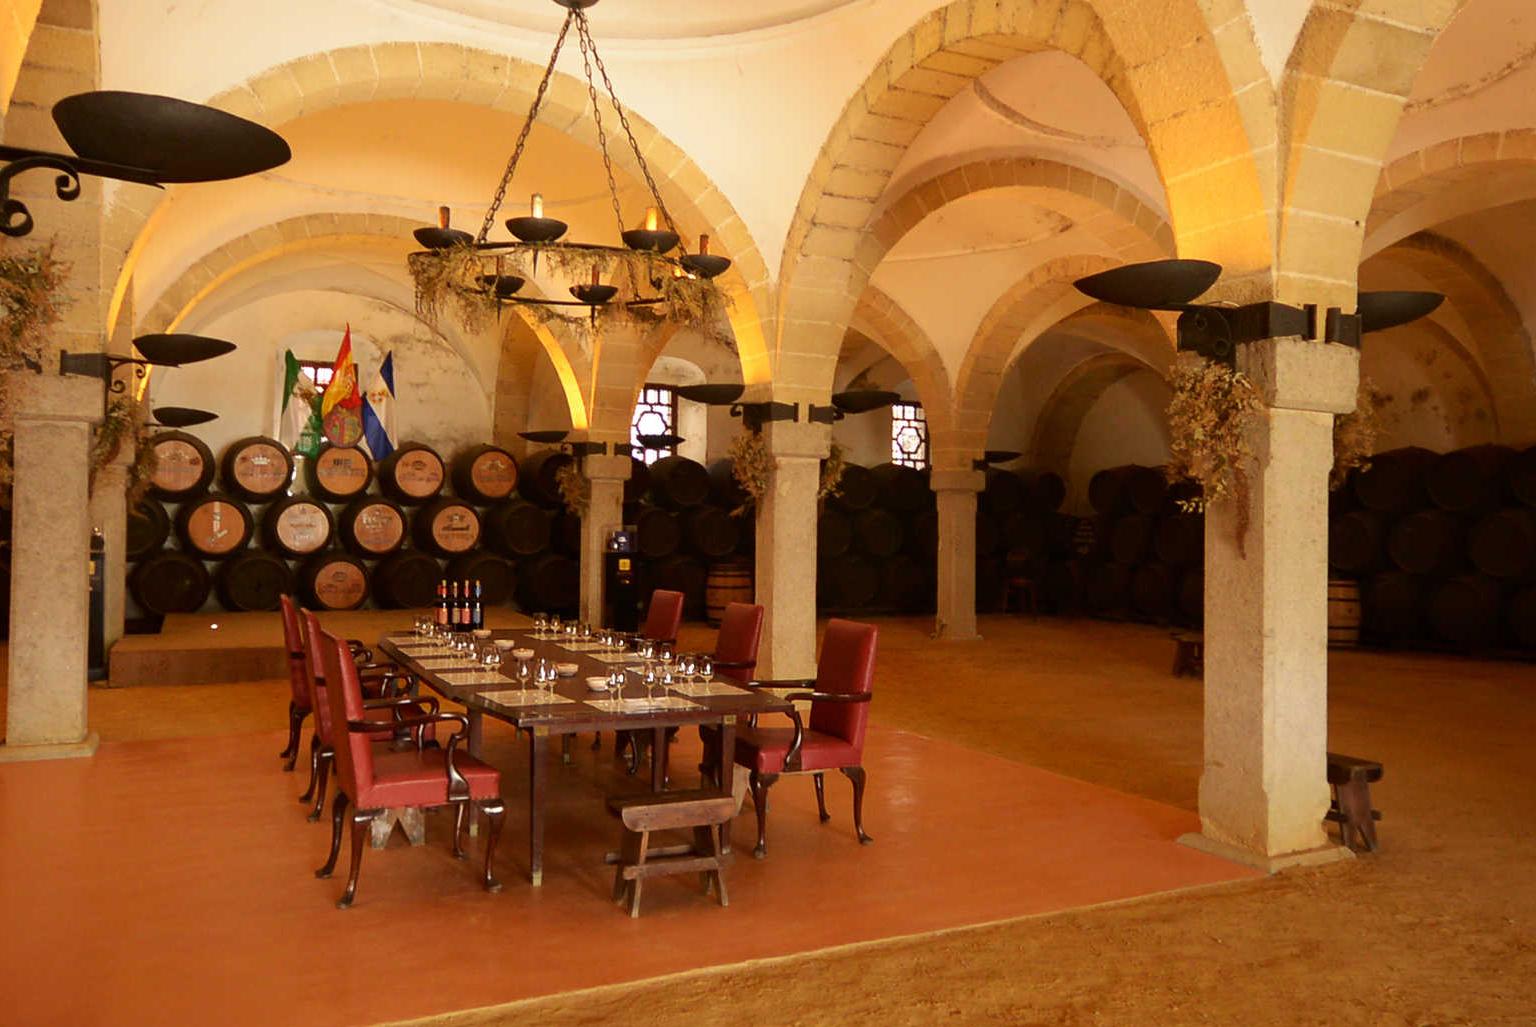 El vino de Jerez con su historia ycuriosidades siendo una experiencia irresistible (33).JPG